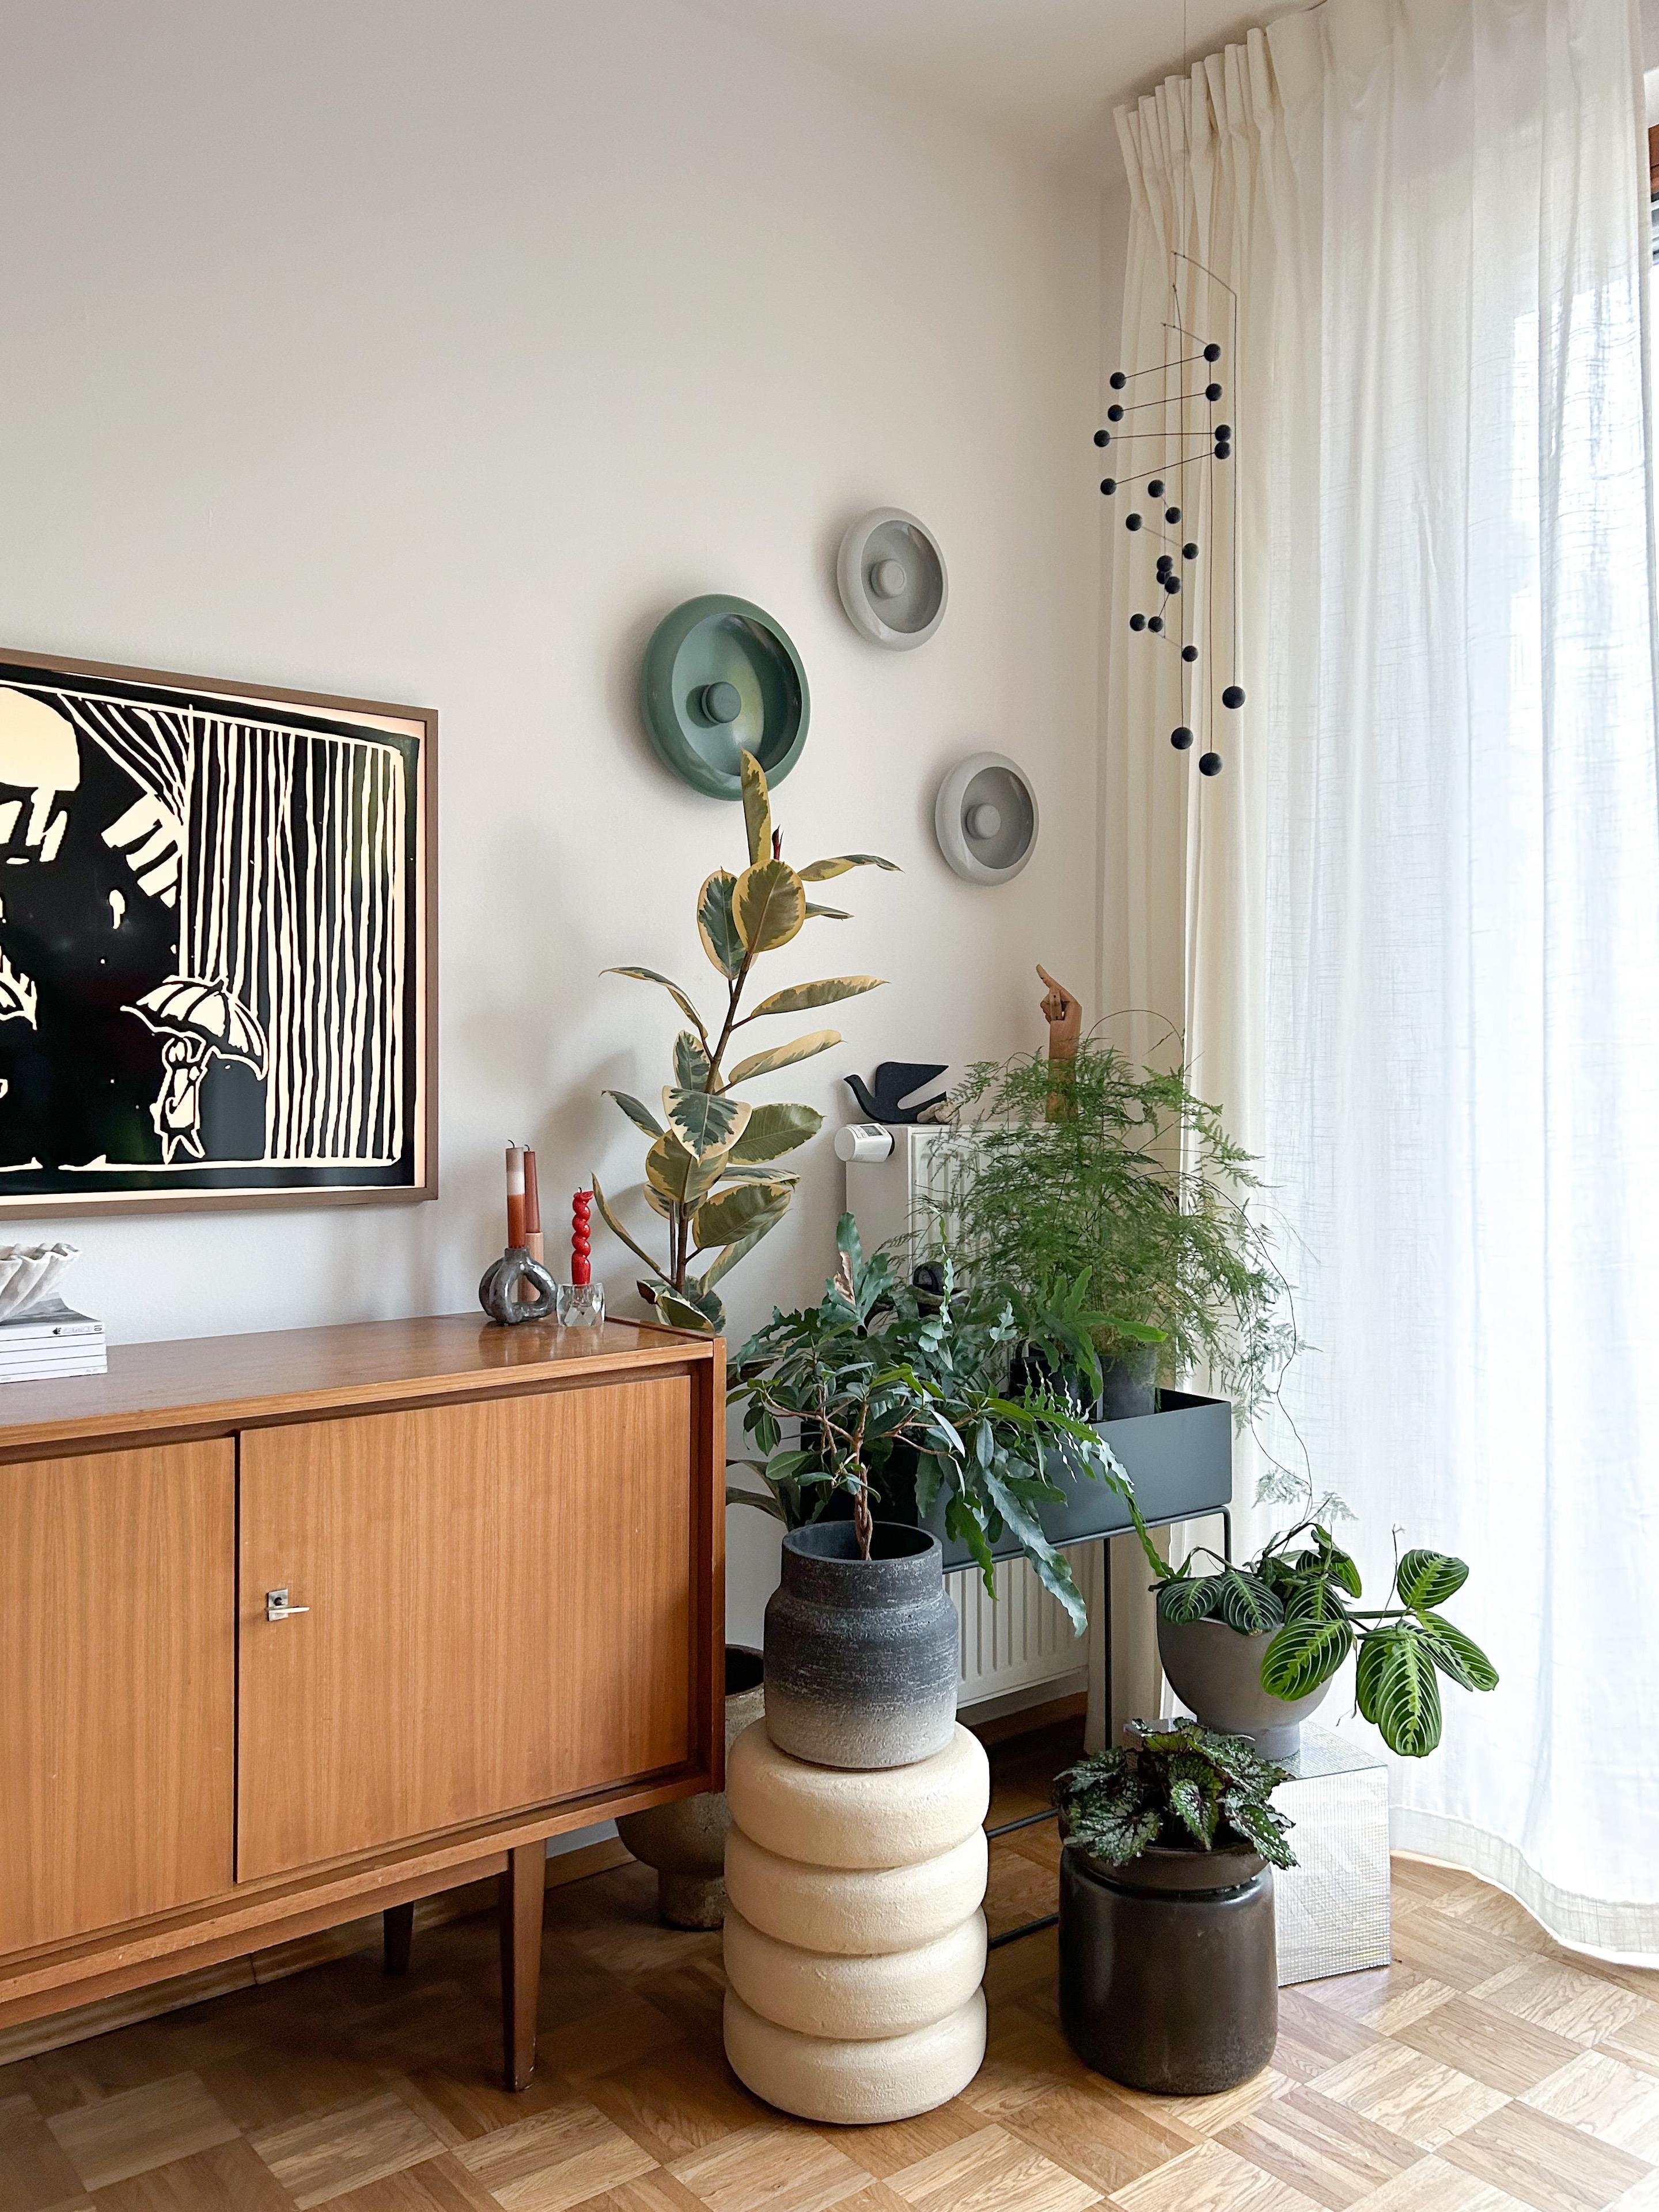 Vorhang auf!

#Vorhang #Wohnzimmer
#Lampen #Sideboard #vintage #Pflanzen